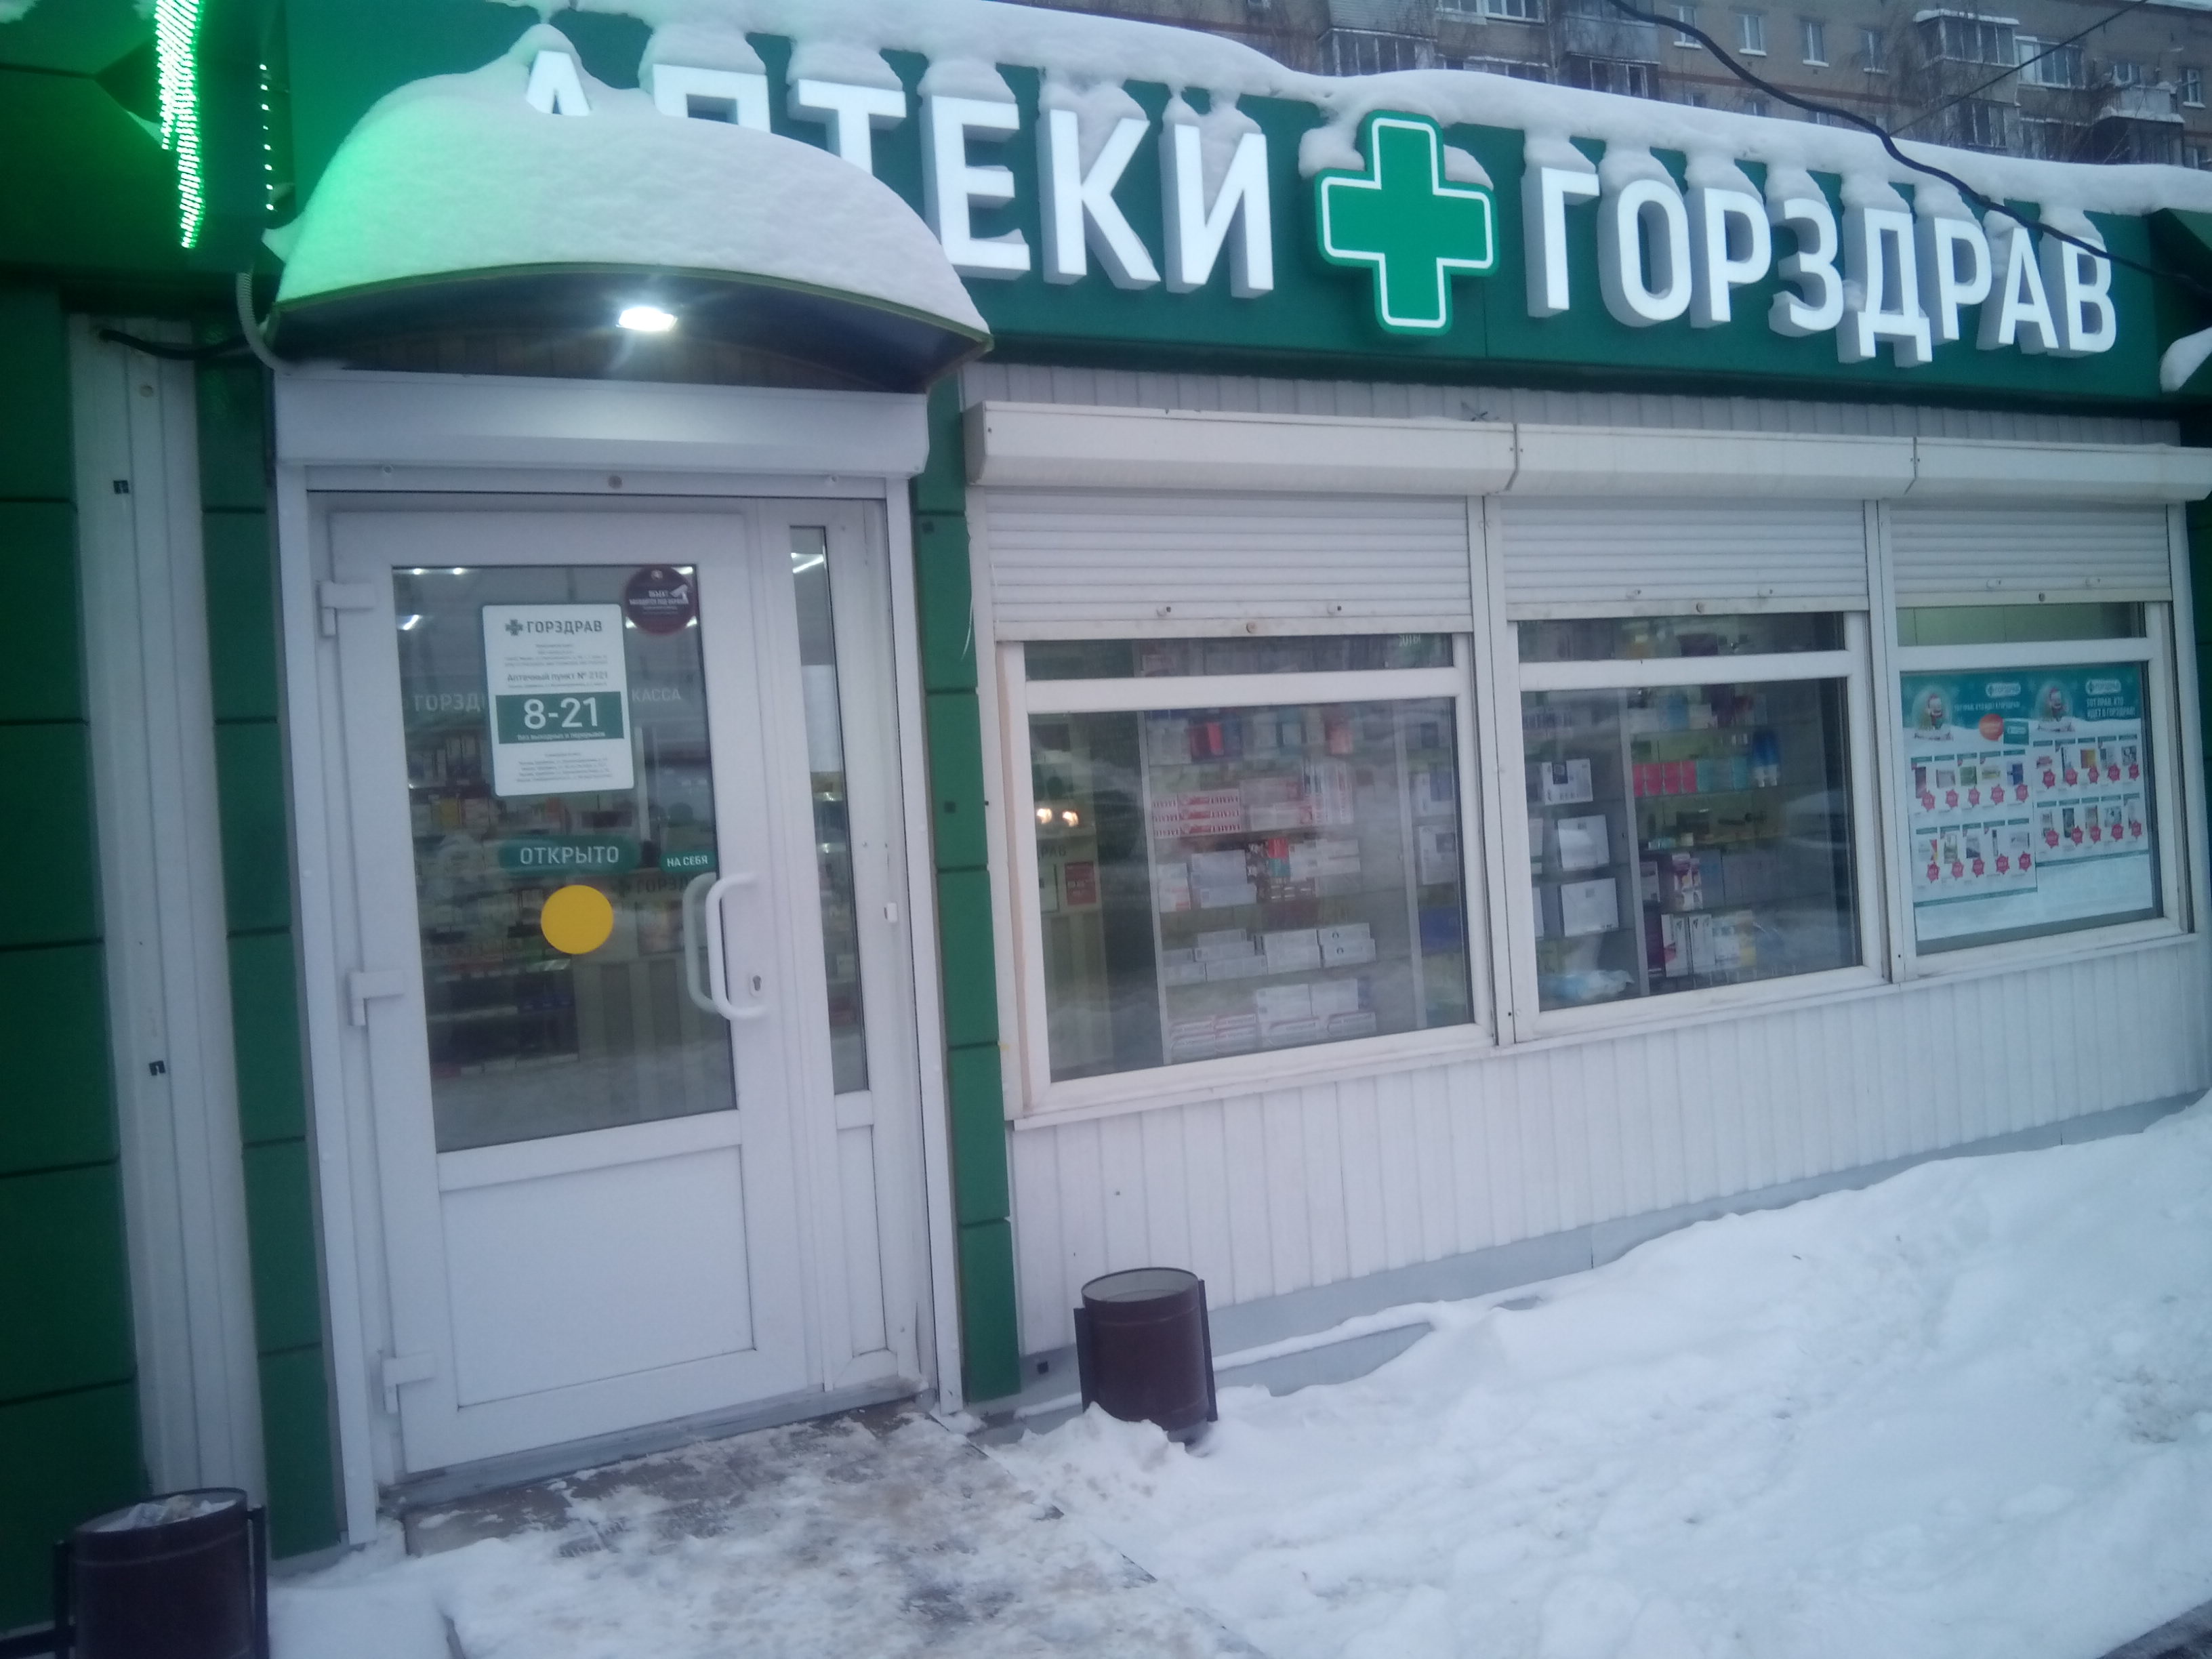 Горздрав электросталь. ГОРЗДРАВ аптека в Щербинке. Улица Ташкентская аптека ГОРЗДРАВ.